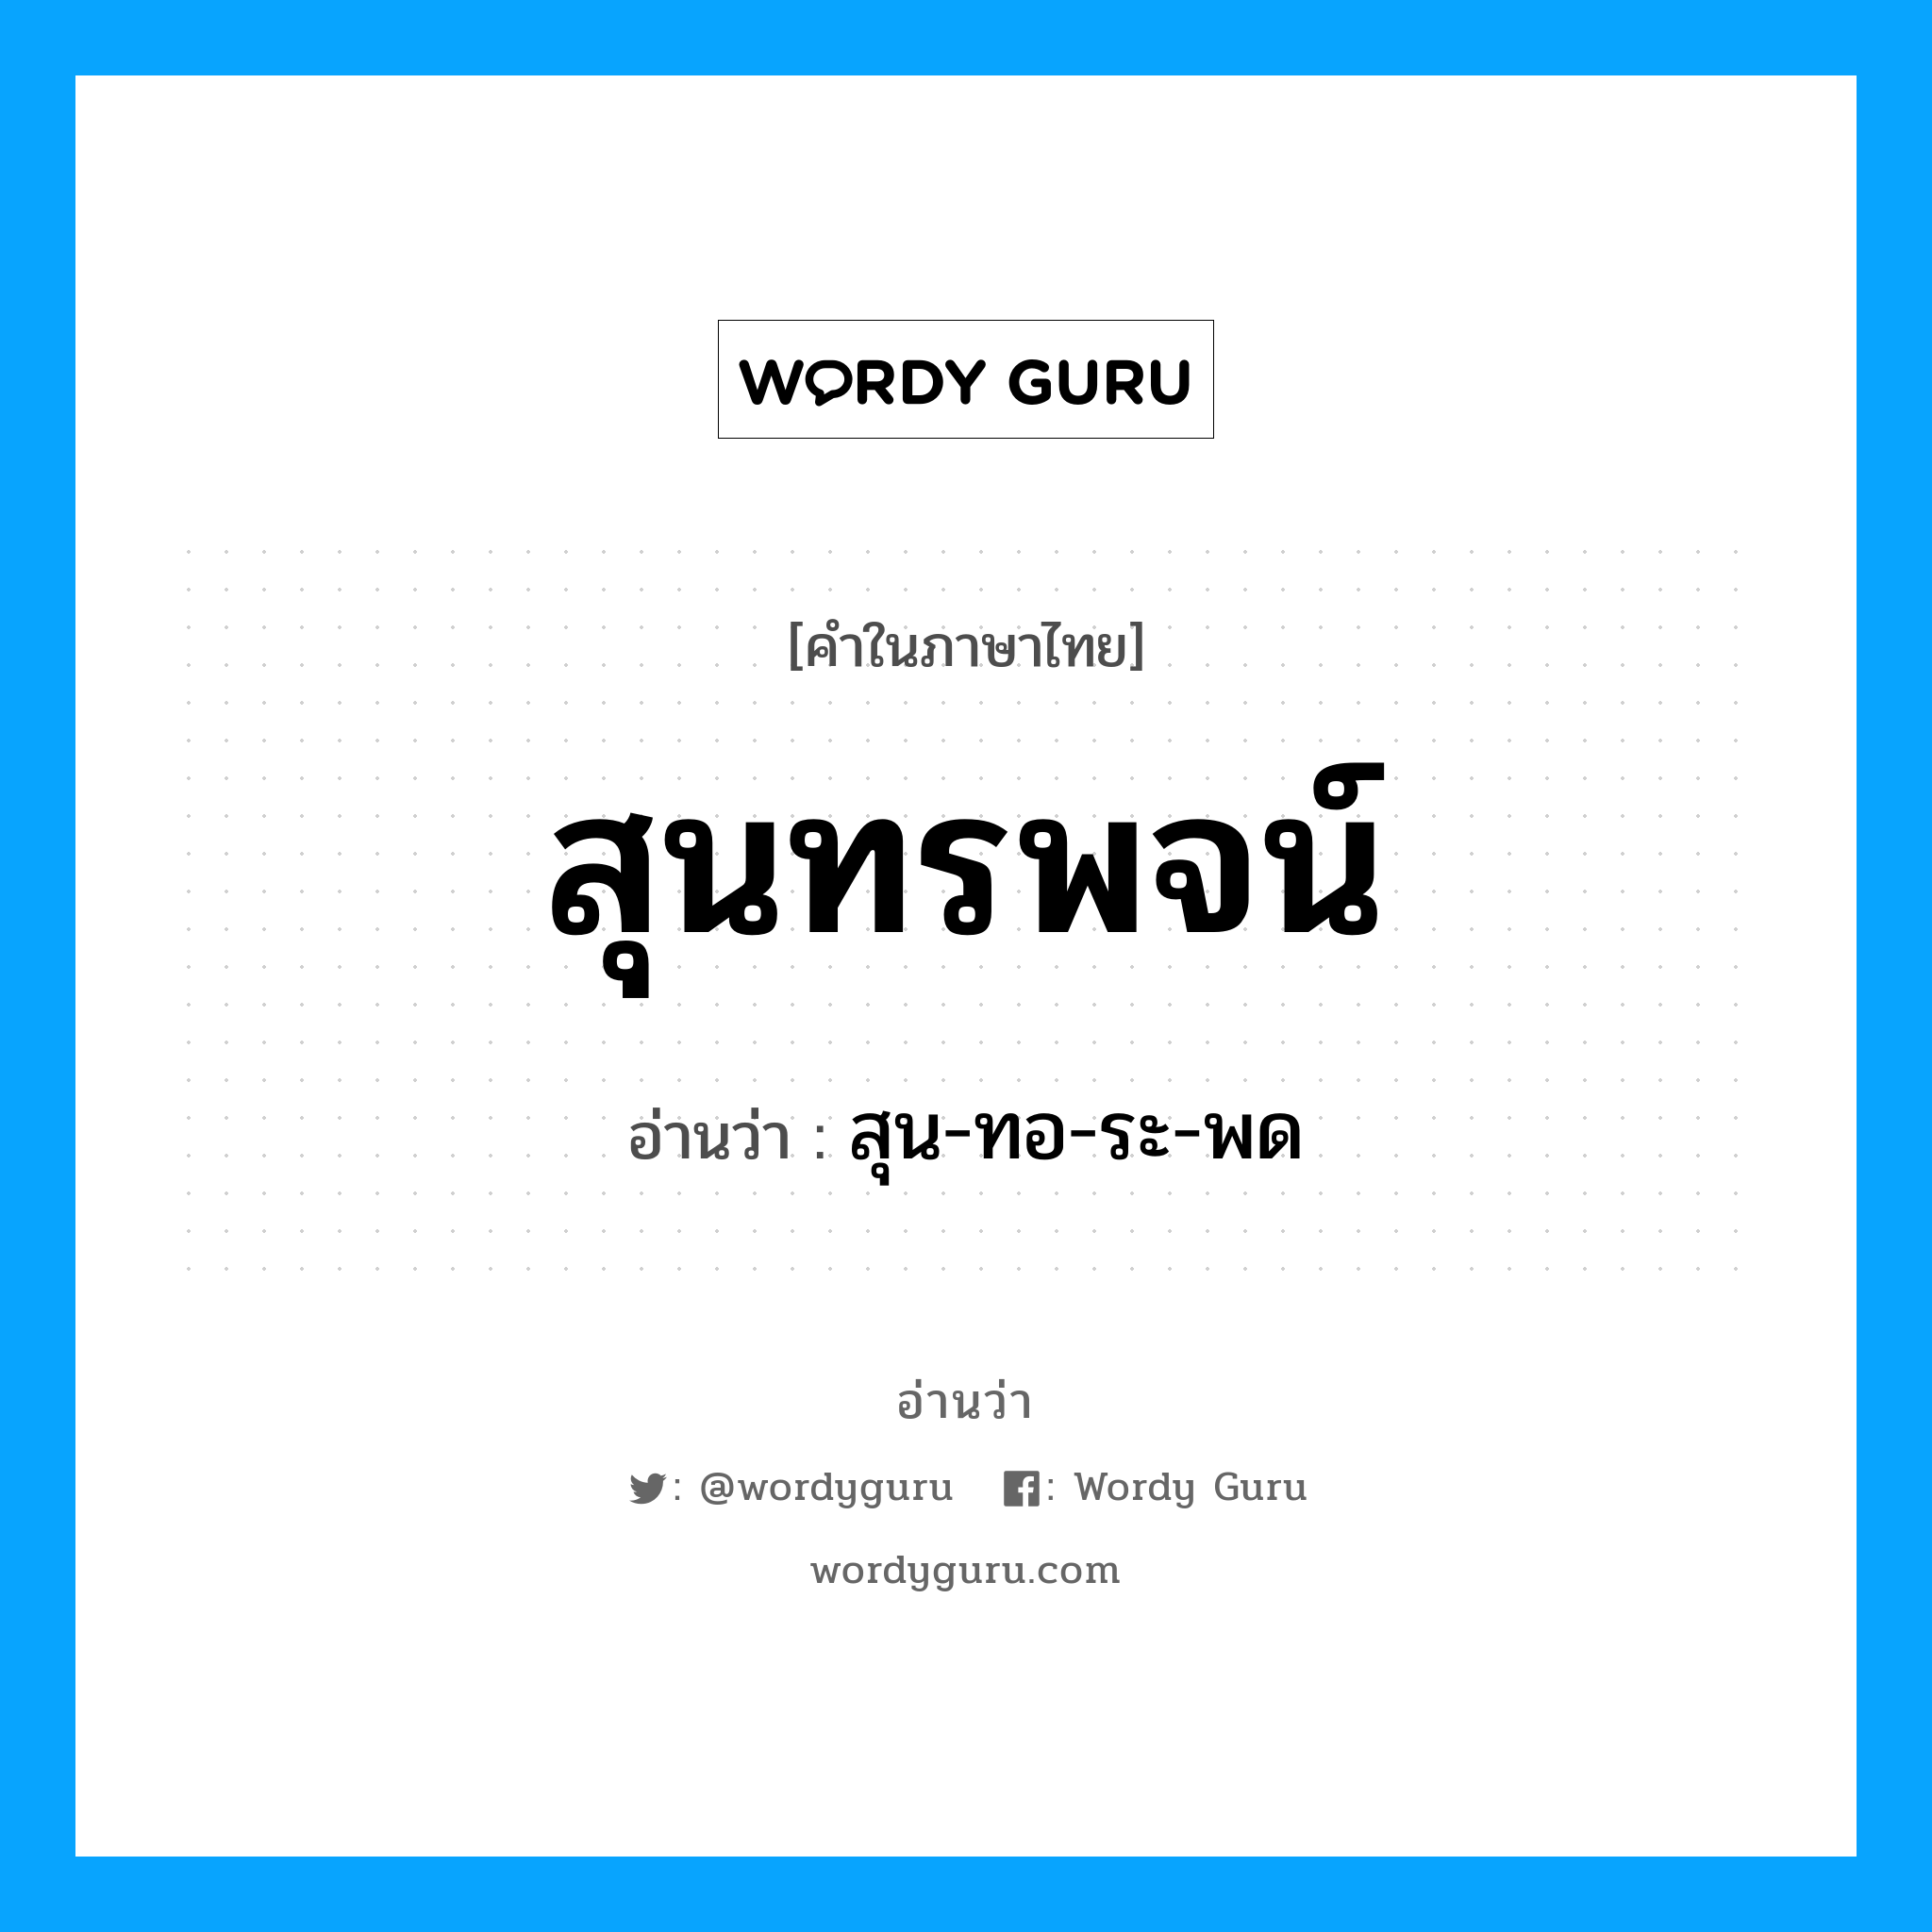 สุน-ทอ-ระ-พด เป็นคำอ่านของคำไหน?, คำในภาษาไทย สุน-ทอ-ระ-พด อ่านว่า สุนทรพจน์